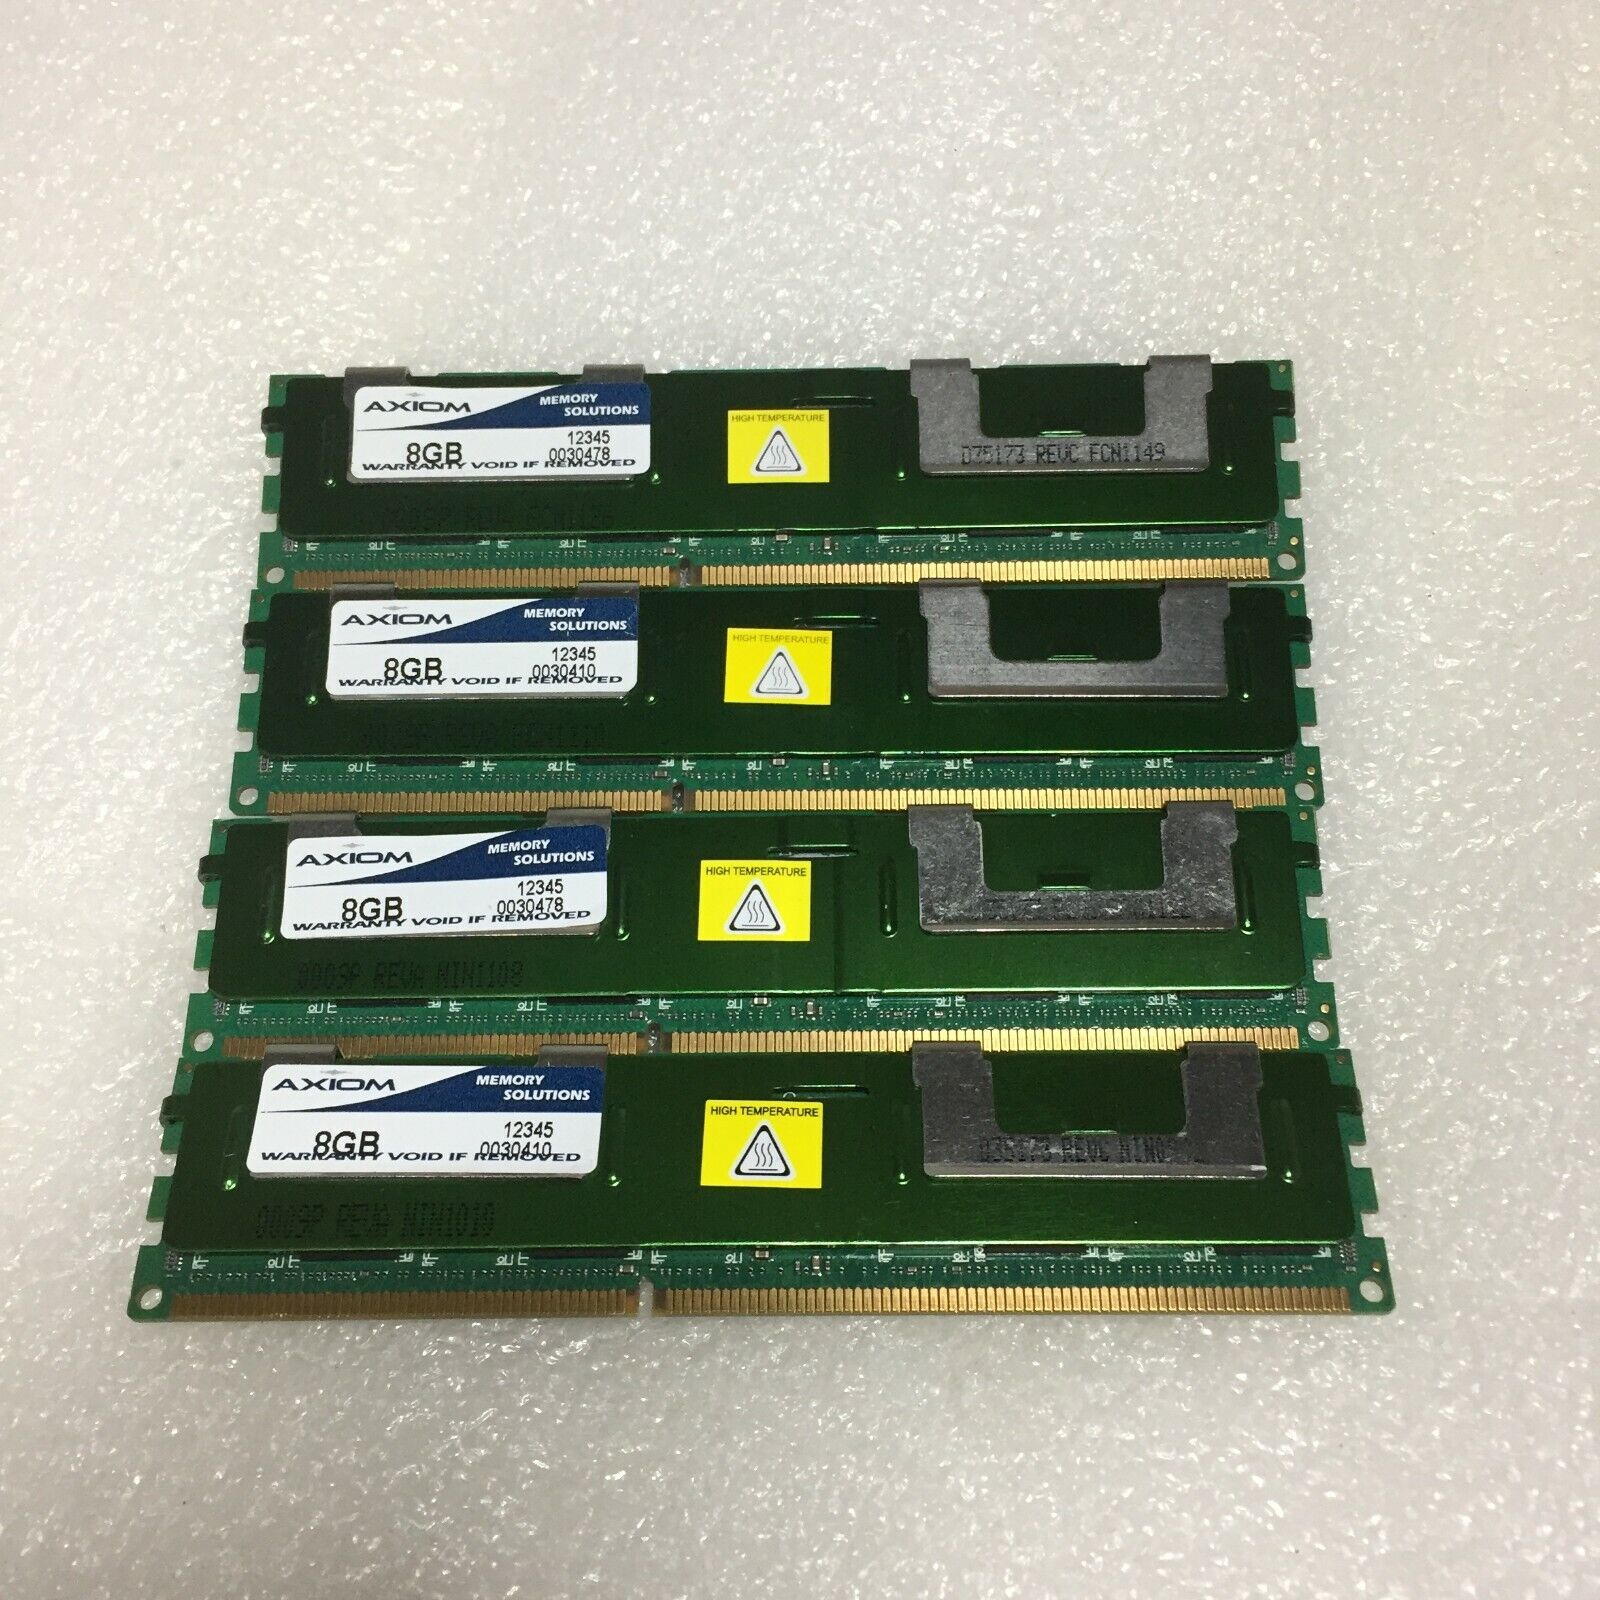  Lot of 4 32GB AXIOM 12345 8GB SERVER MEMORY DIMM DDR3 PC3-10600 REG FREE S/H